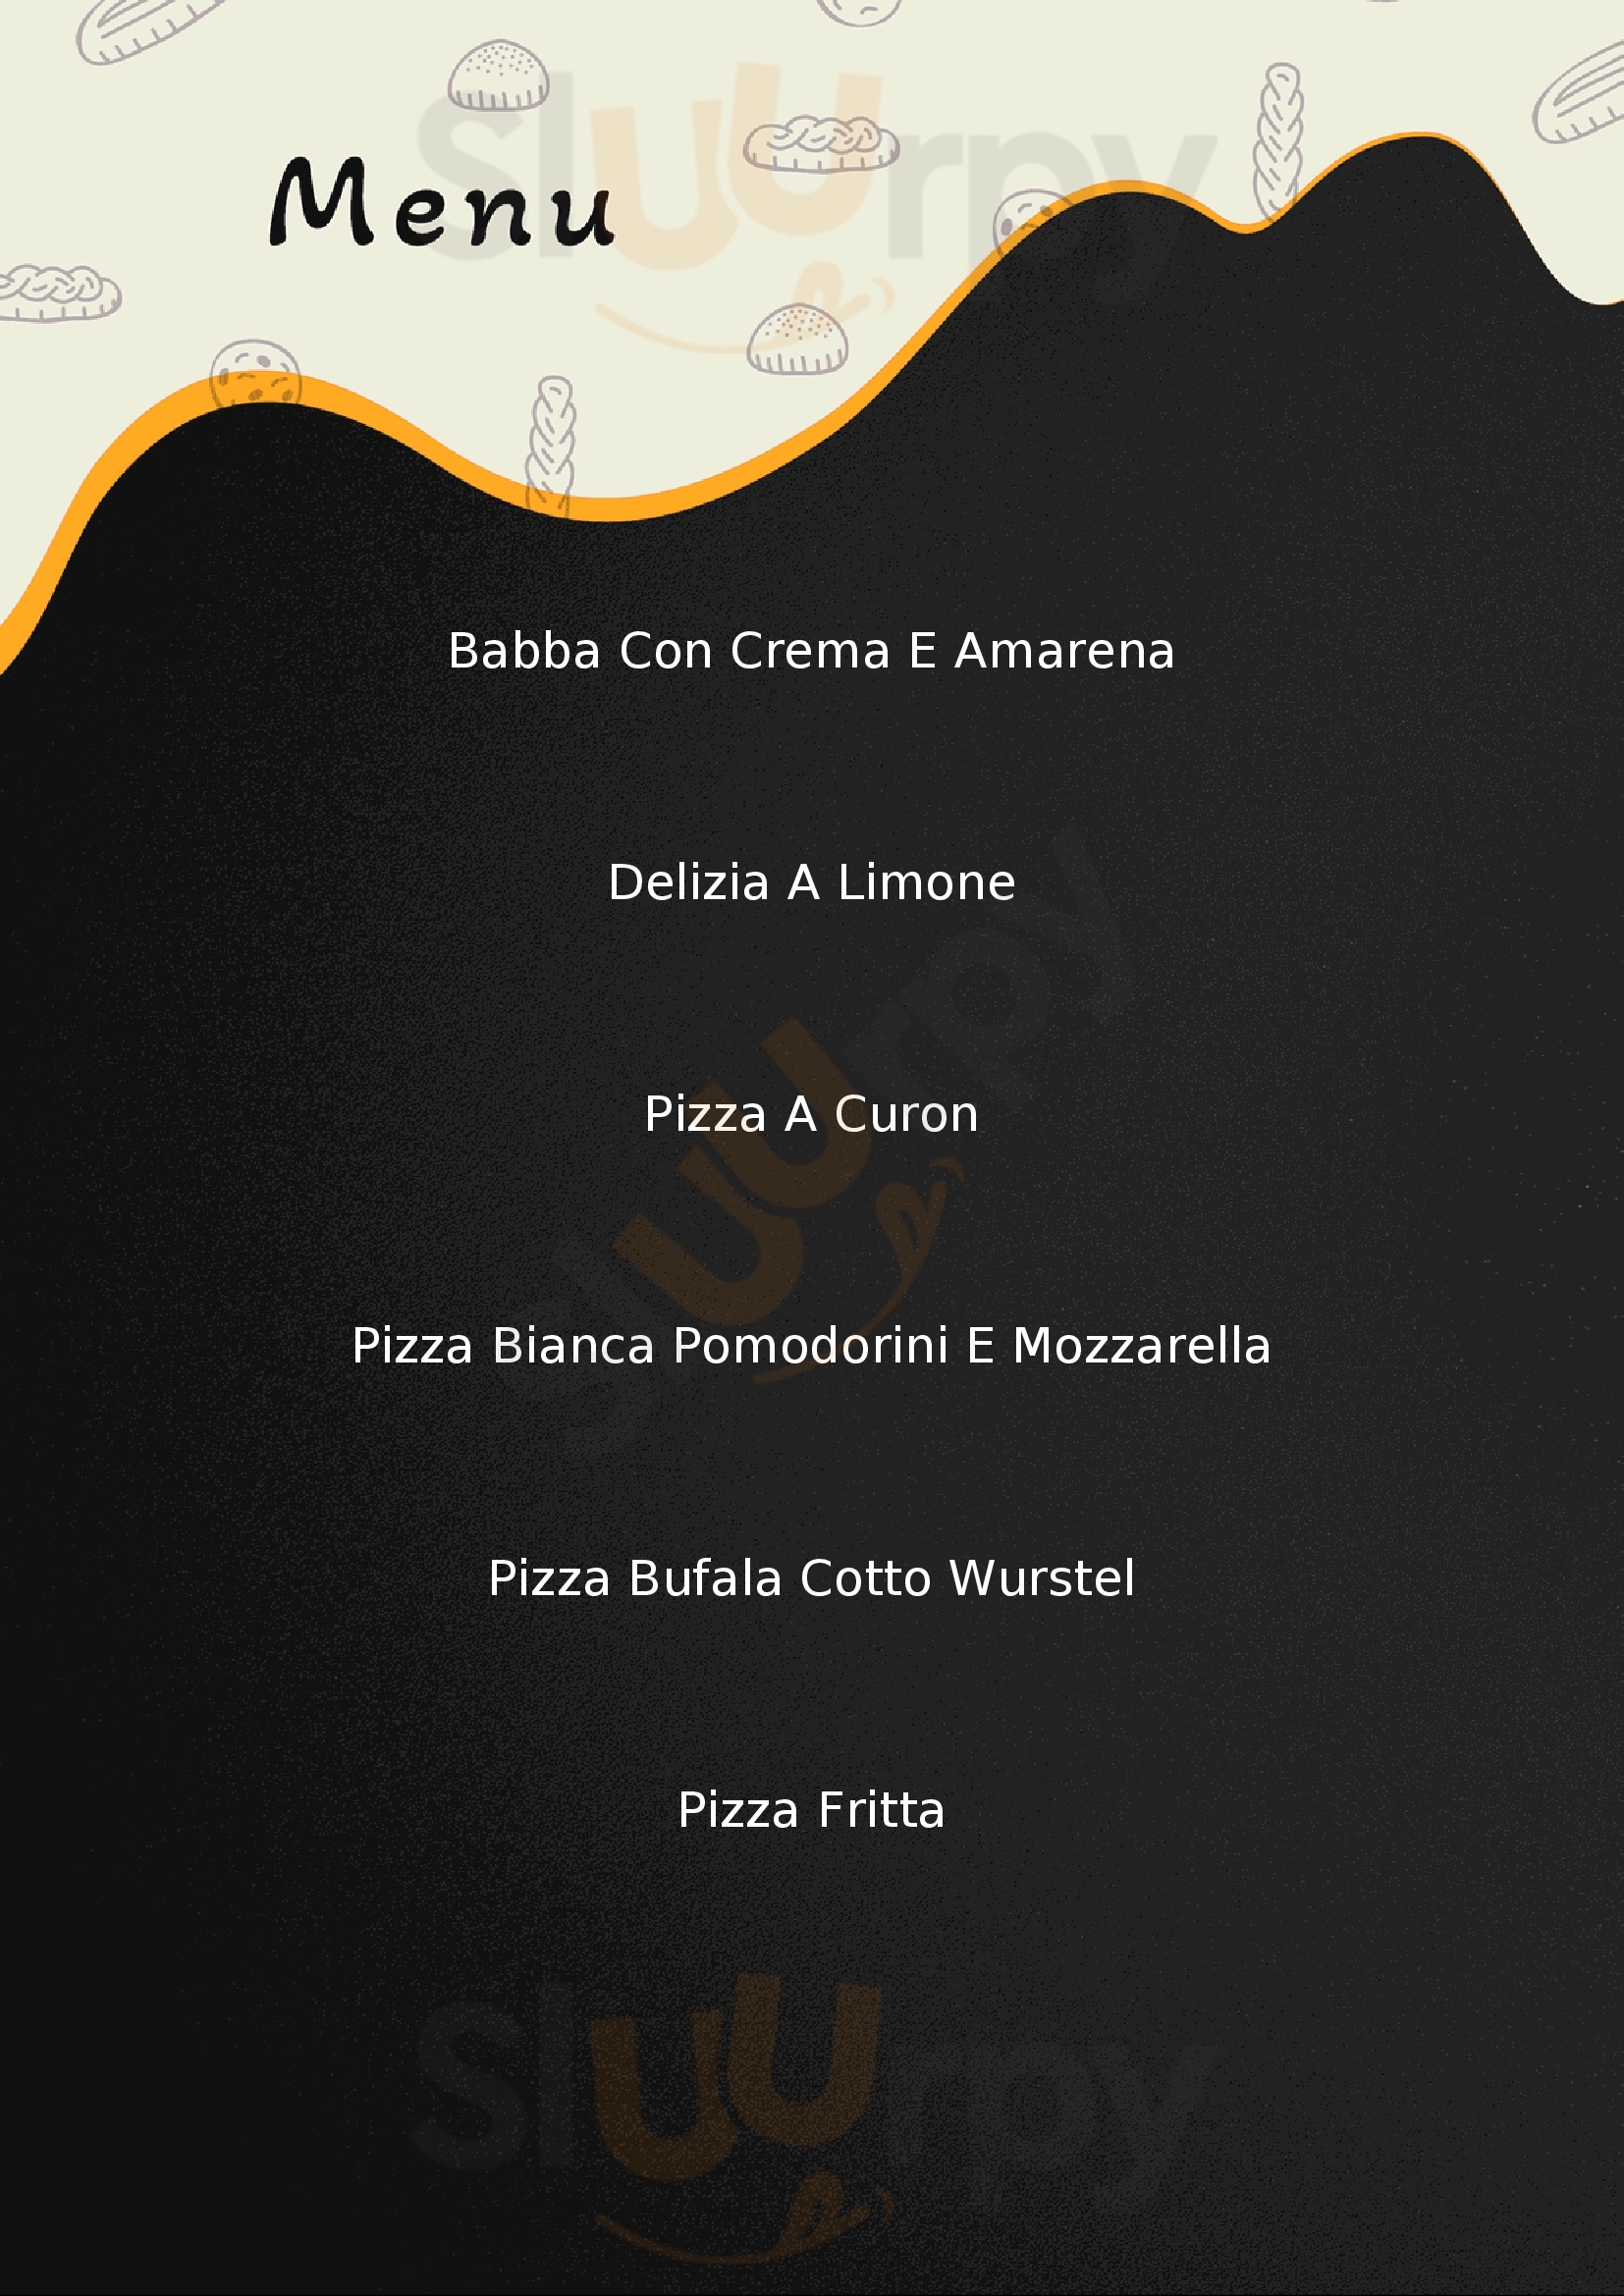 Masaniello Pizza E Sfizi Lucca menù 1 pagina